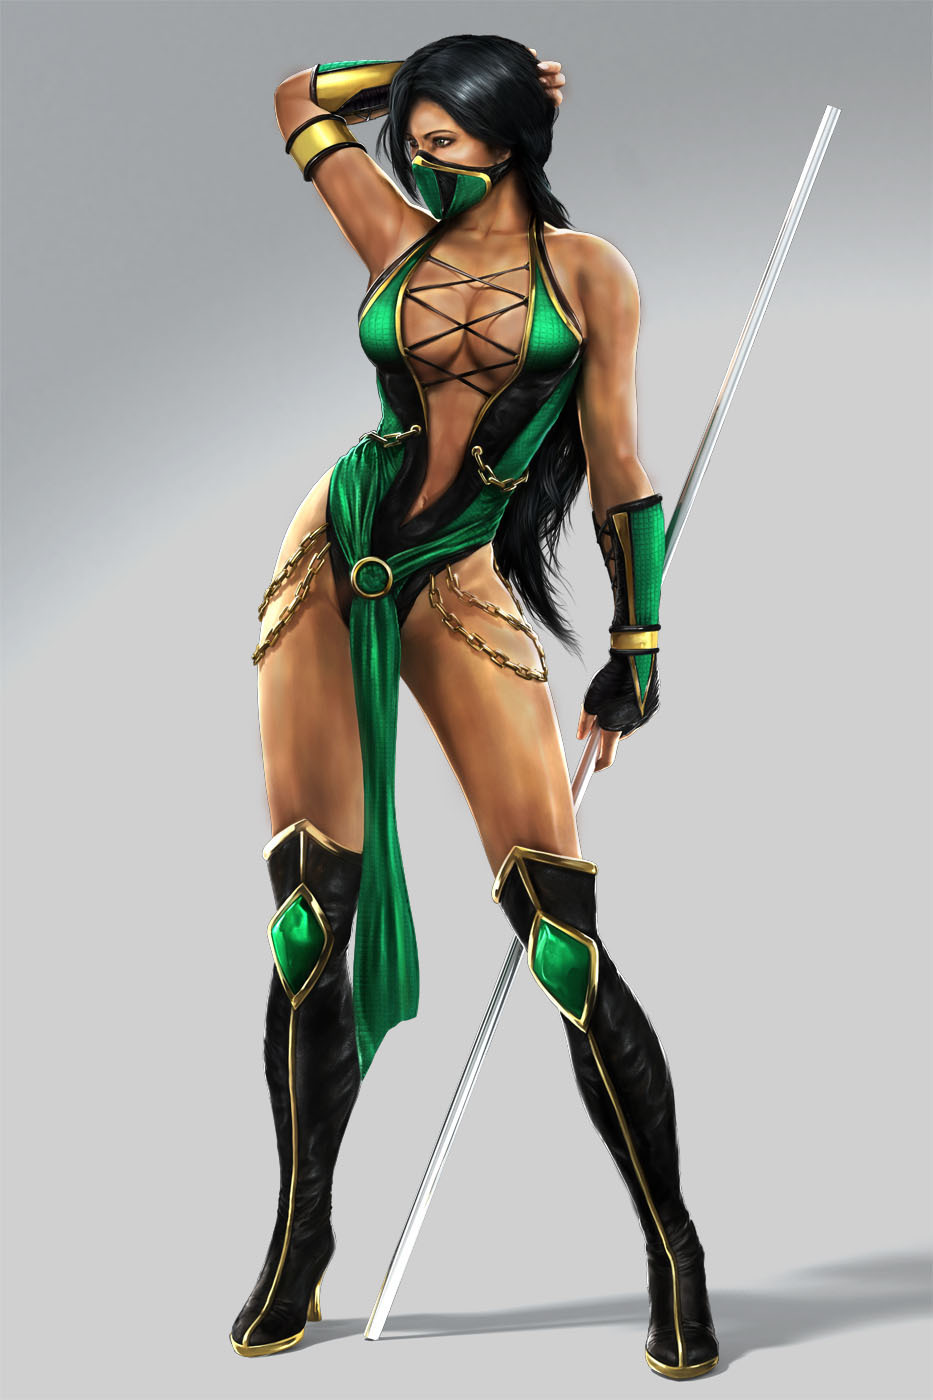 Jade from Mortal Kombat 9